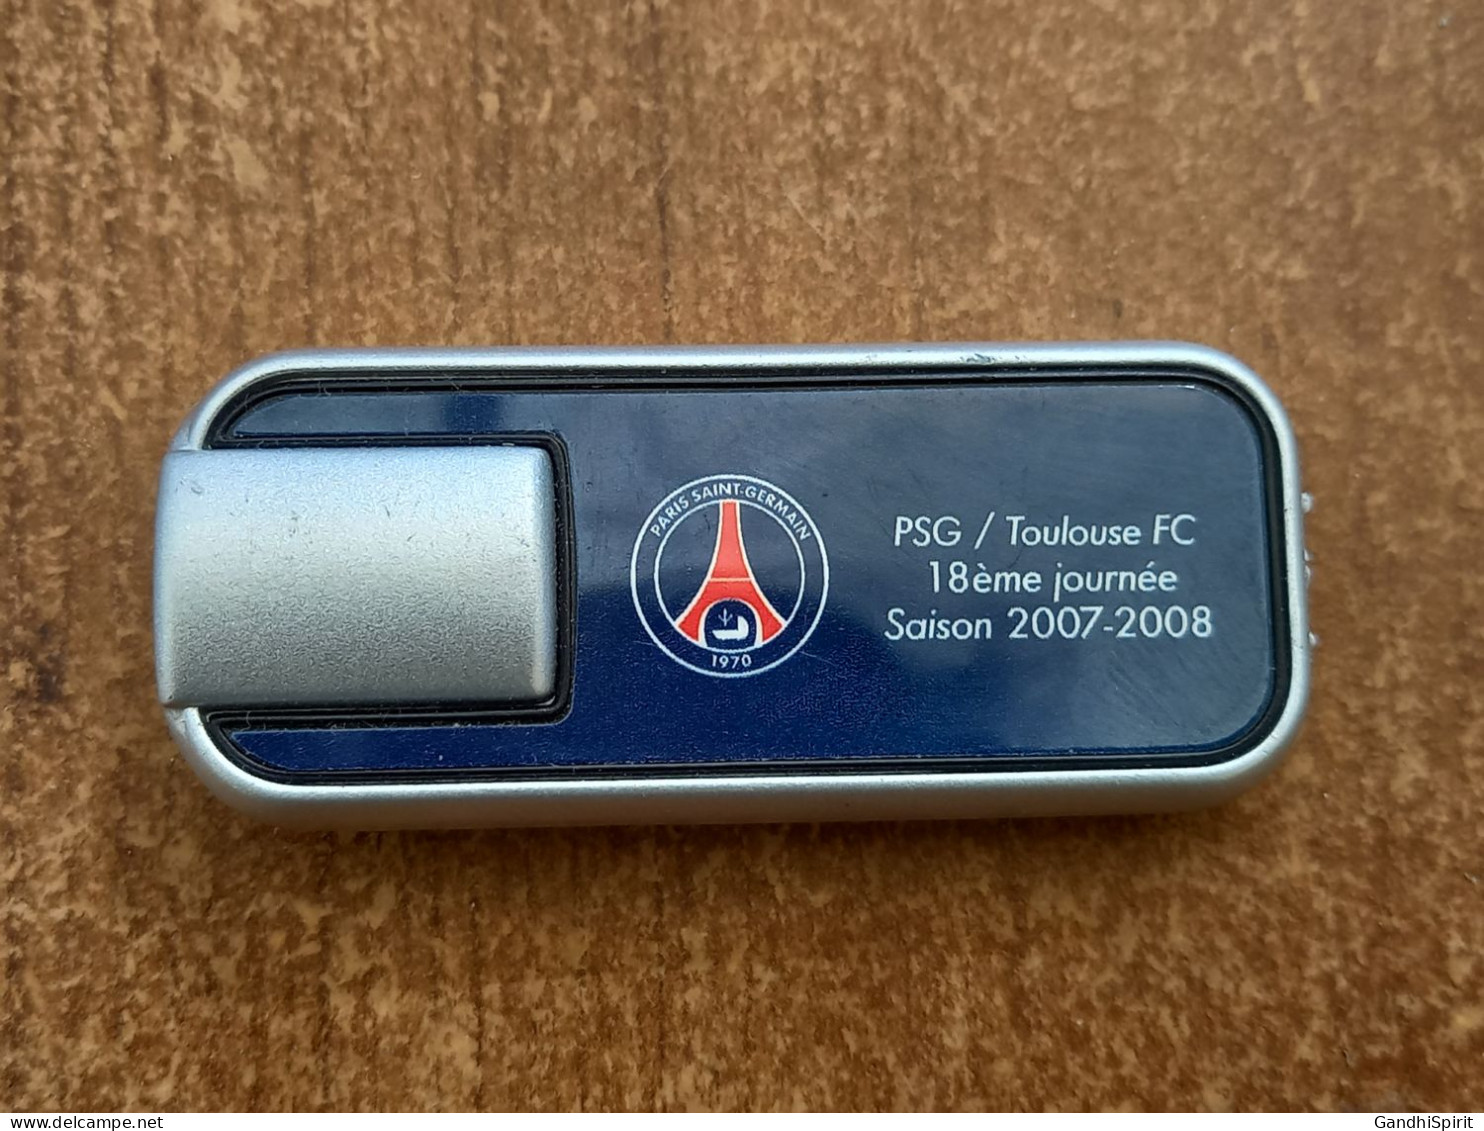 PSG Paris Saint Germain / Toulouse FC 2007-2008 Laser Ou Petite Lampe De Poche - Uniformes Recordatorios & Misc